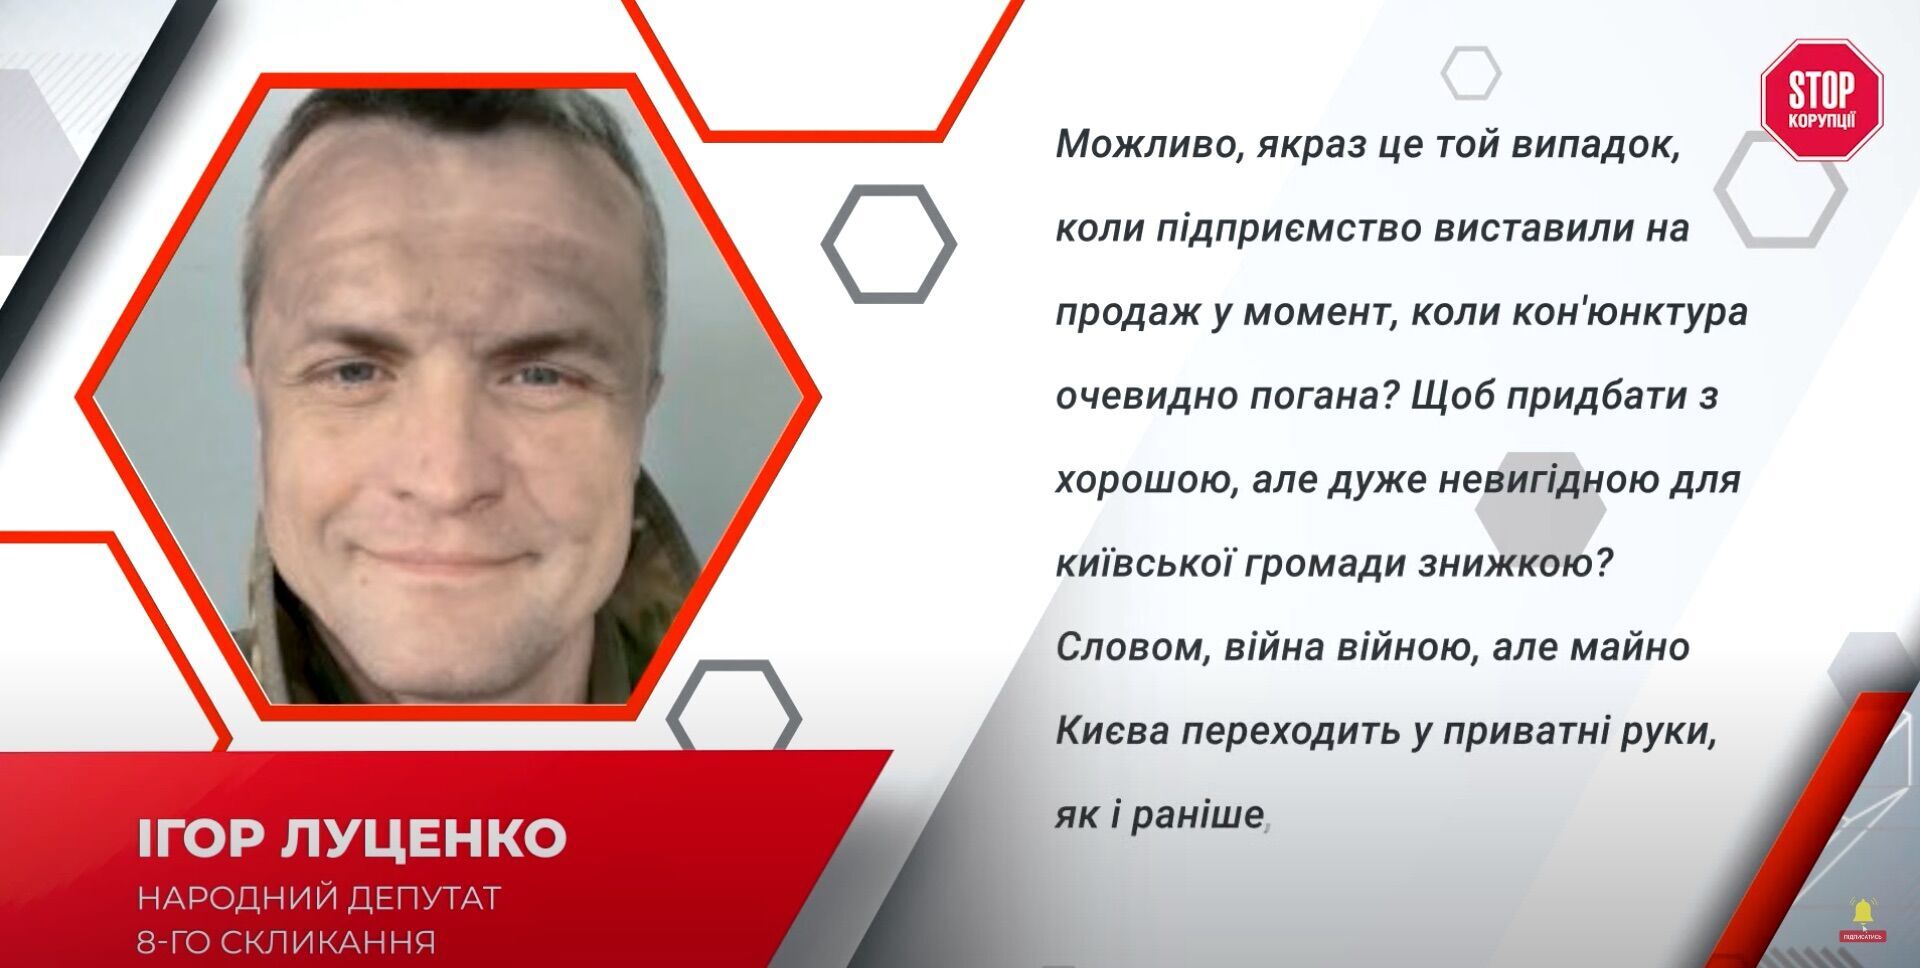 Игорь Луценко прокомментировал ситуацию вокруг БХФЗ